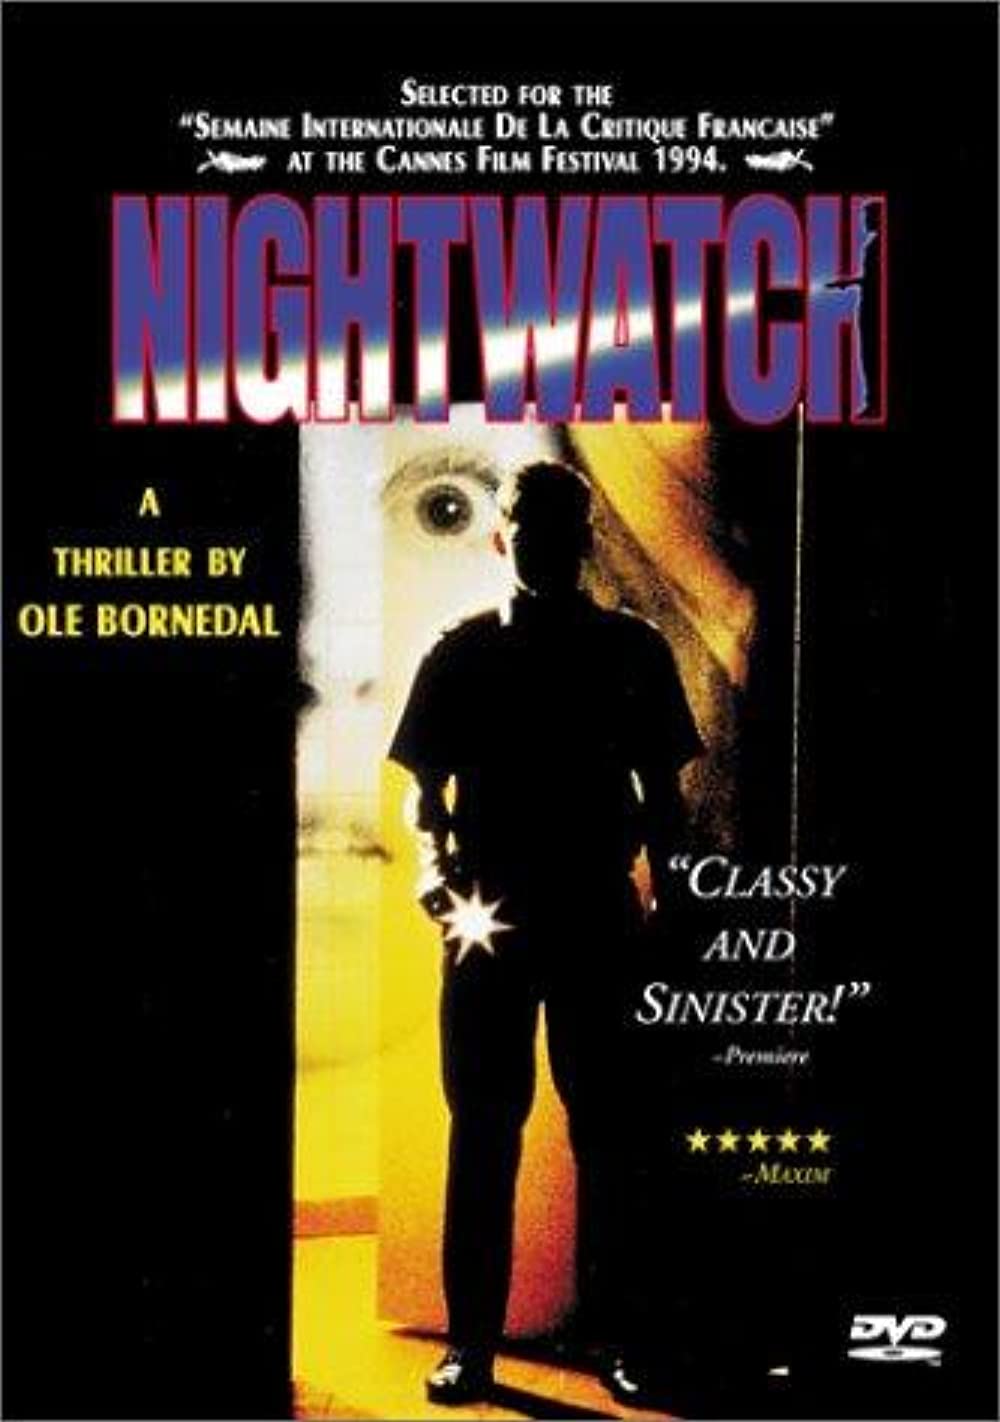 Nattevagten (Nightwatch)